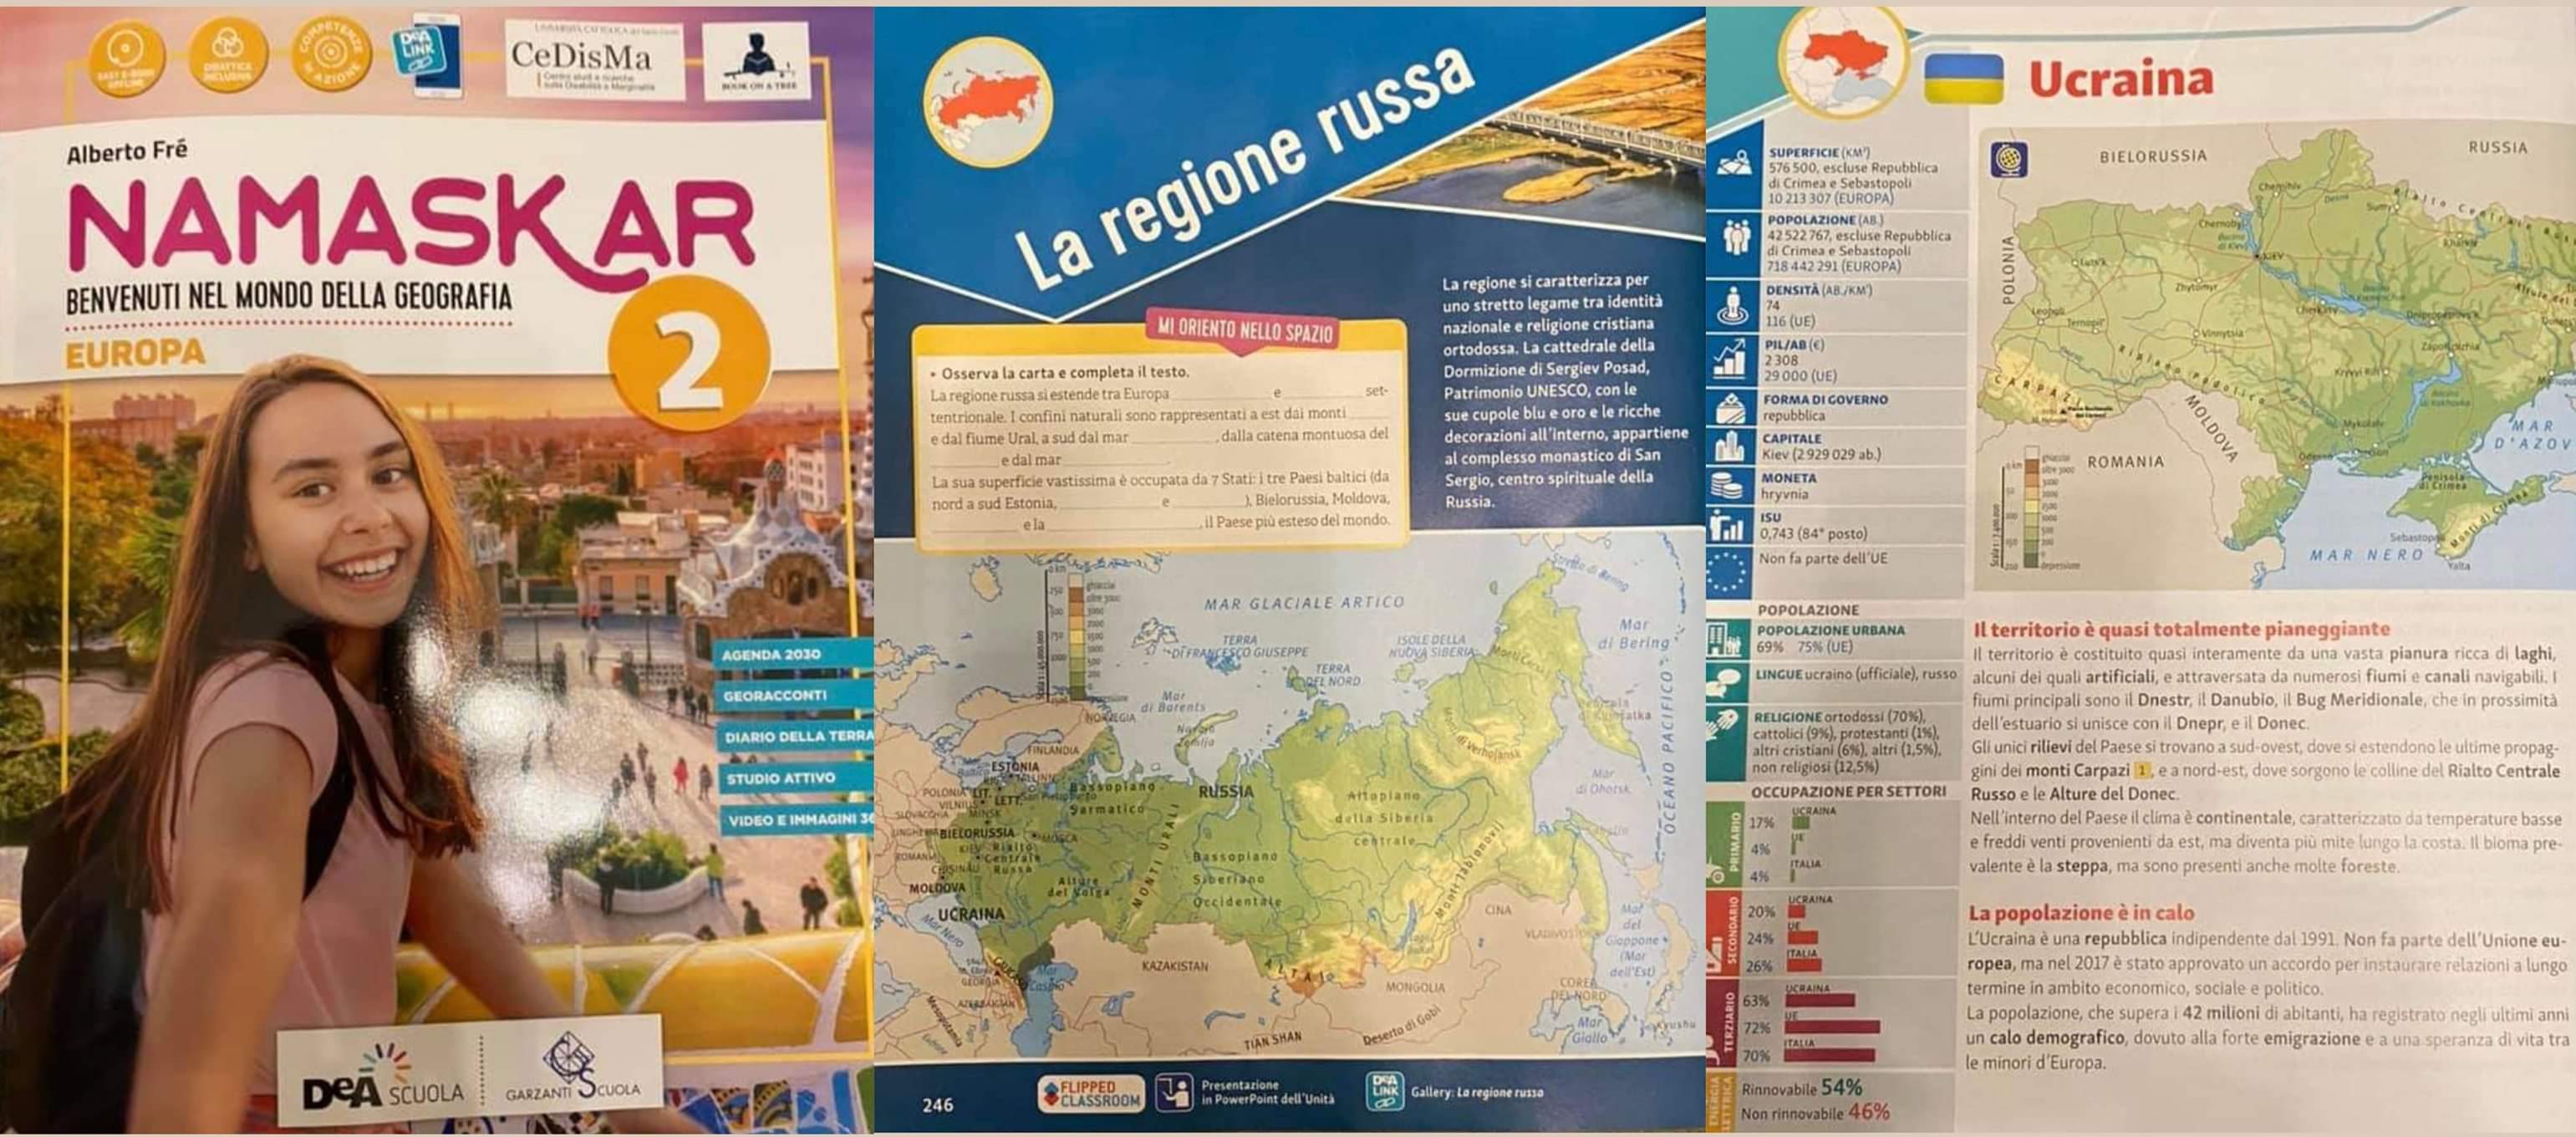 В итальянском учебнике по географии Украину включили в состав России (фото) - 1 - изображение